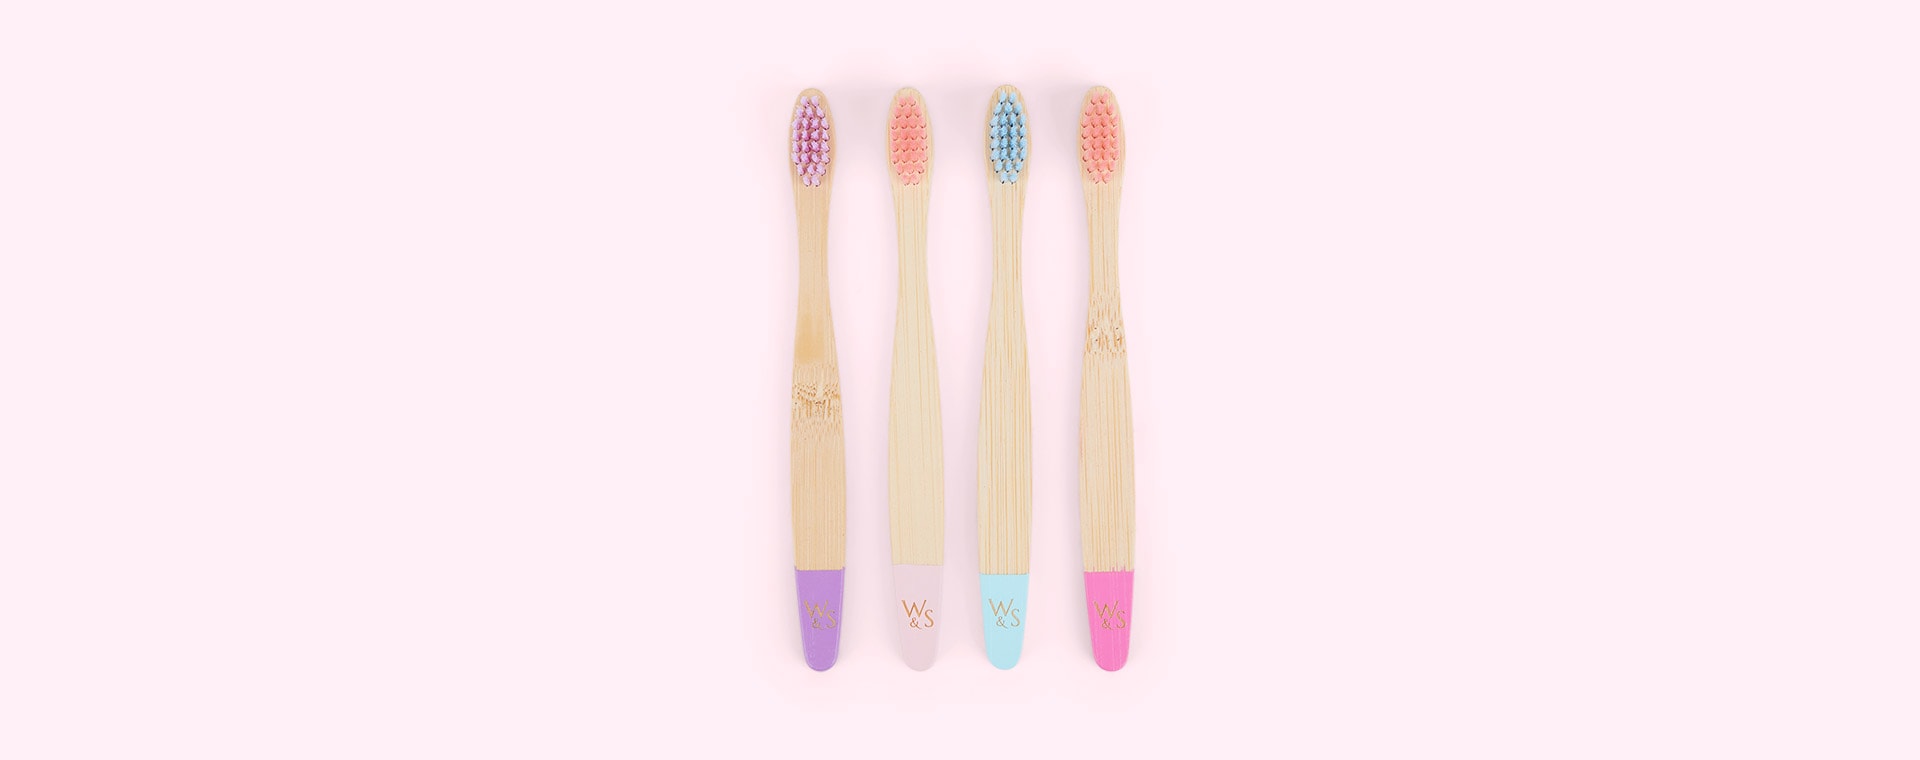 Candy Wild & Stone 4-Pack Organic Children's Bamboo Toothbrush